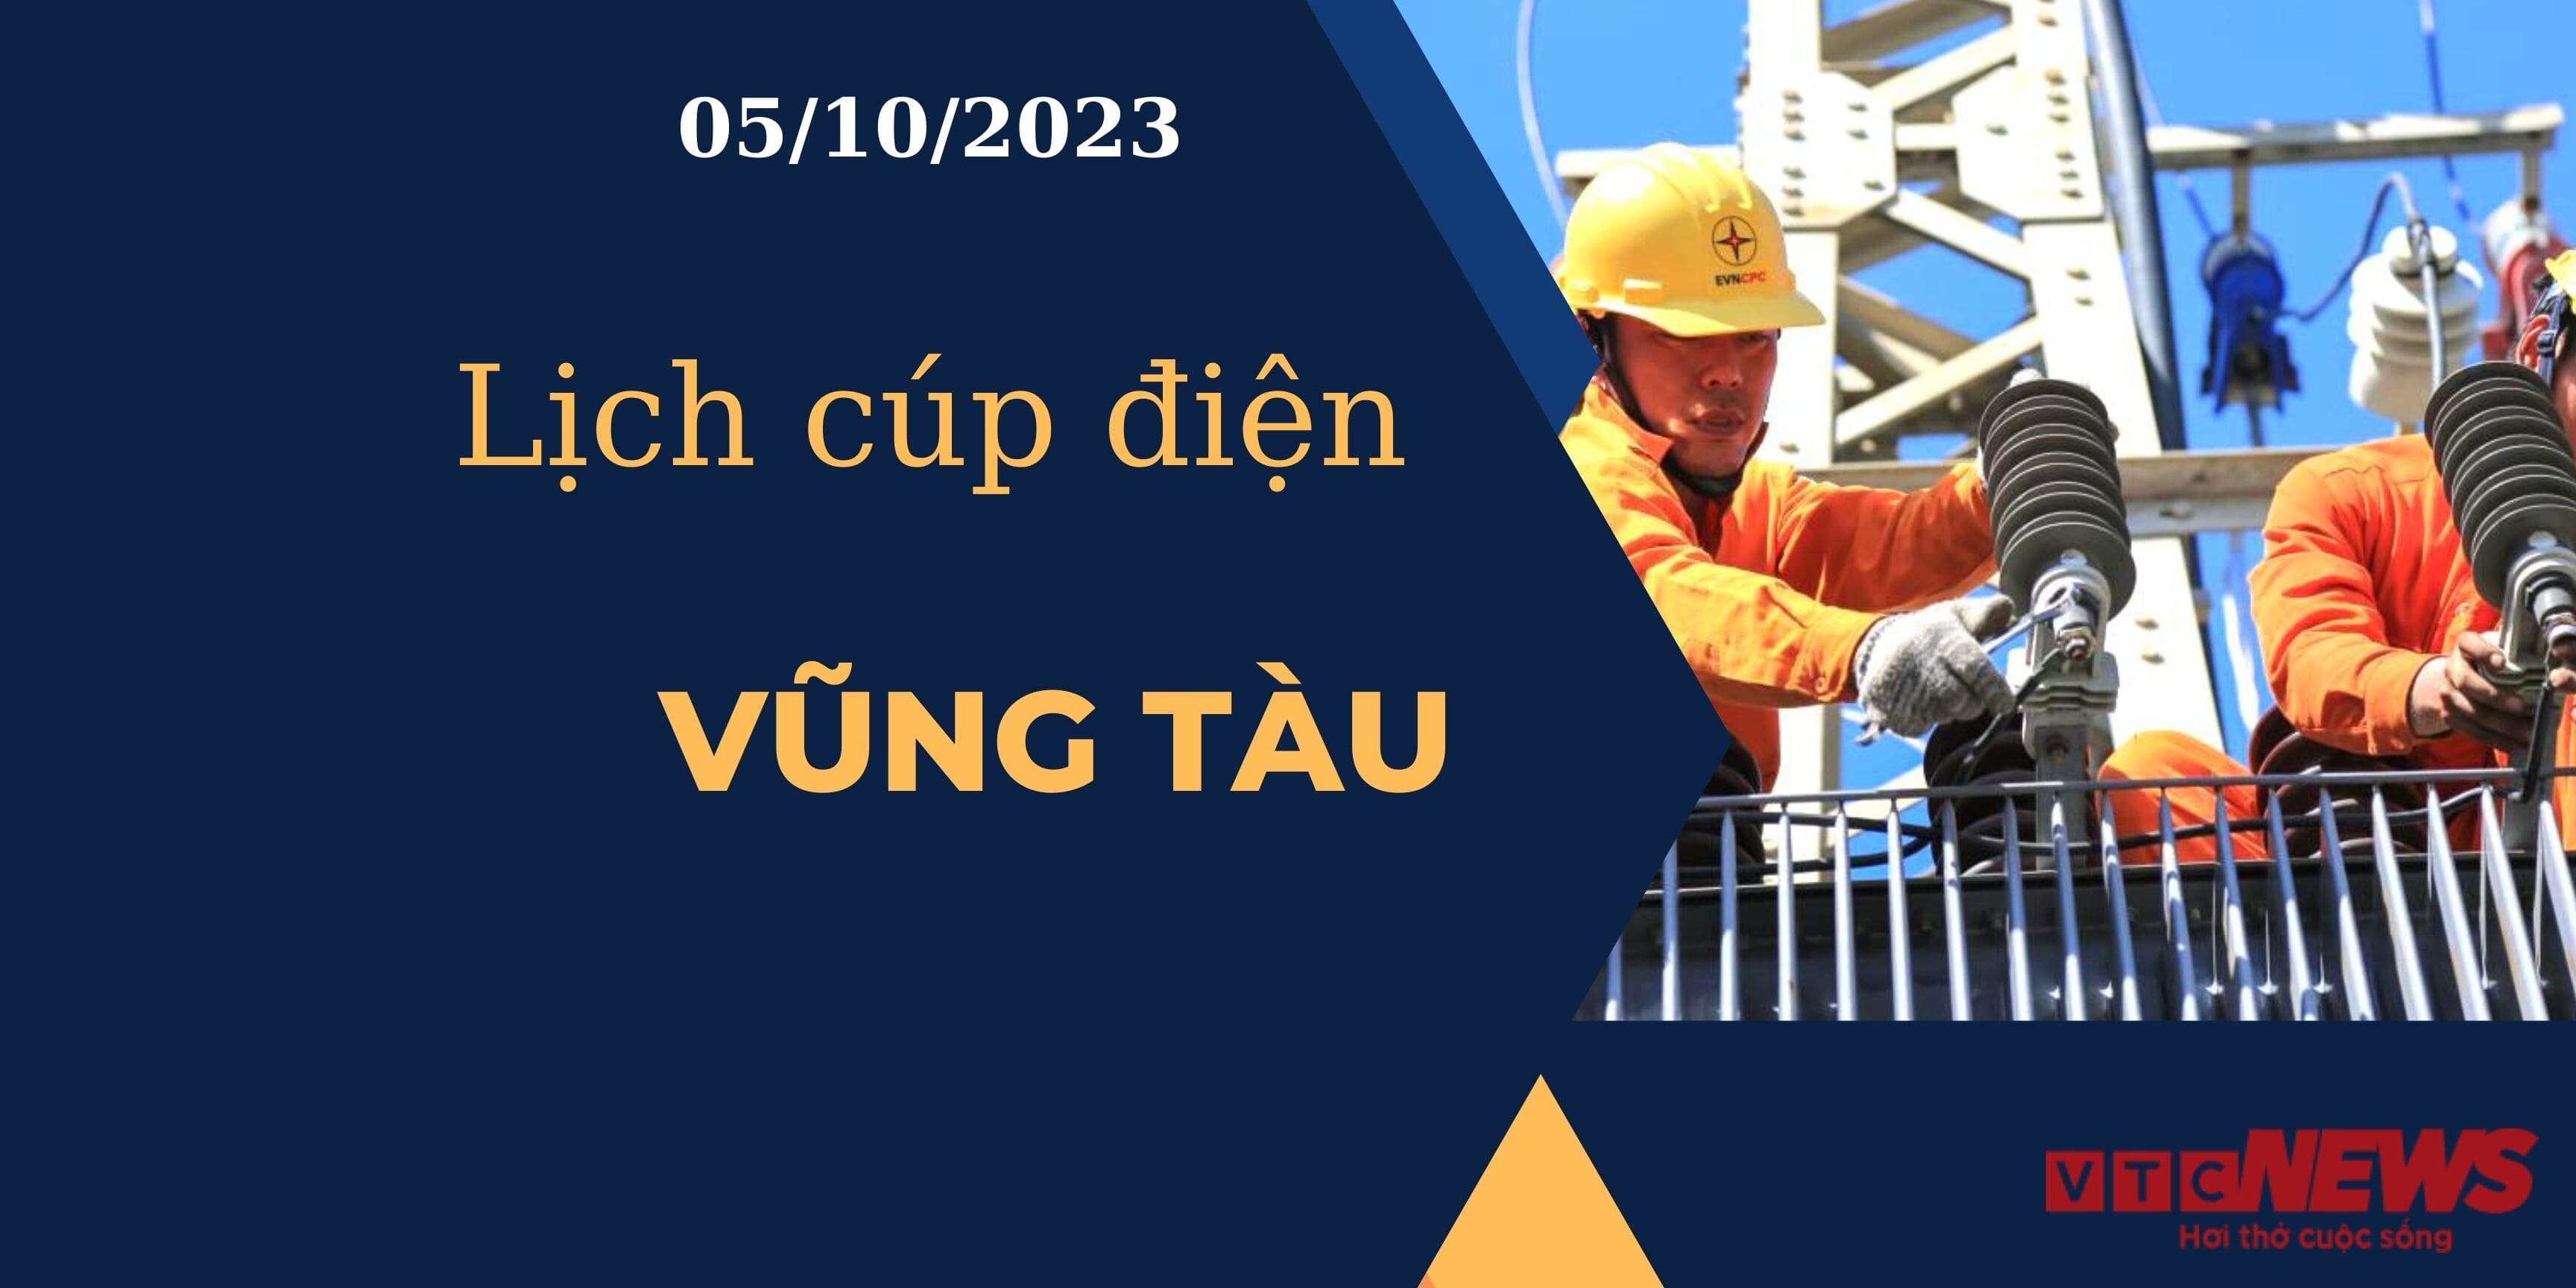 Lịch cúp điện hôm nay ngày 05/10/2023 tại Bà Rịa - Vũng Tàu